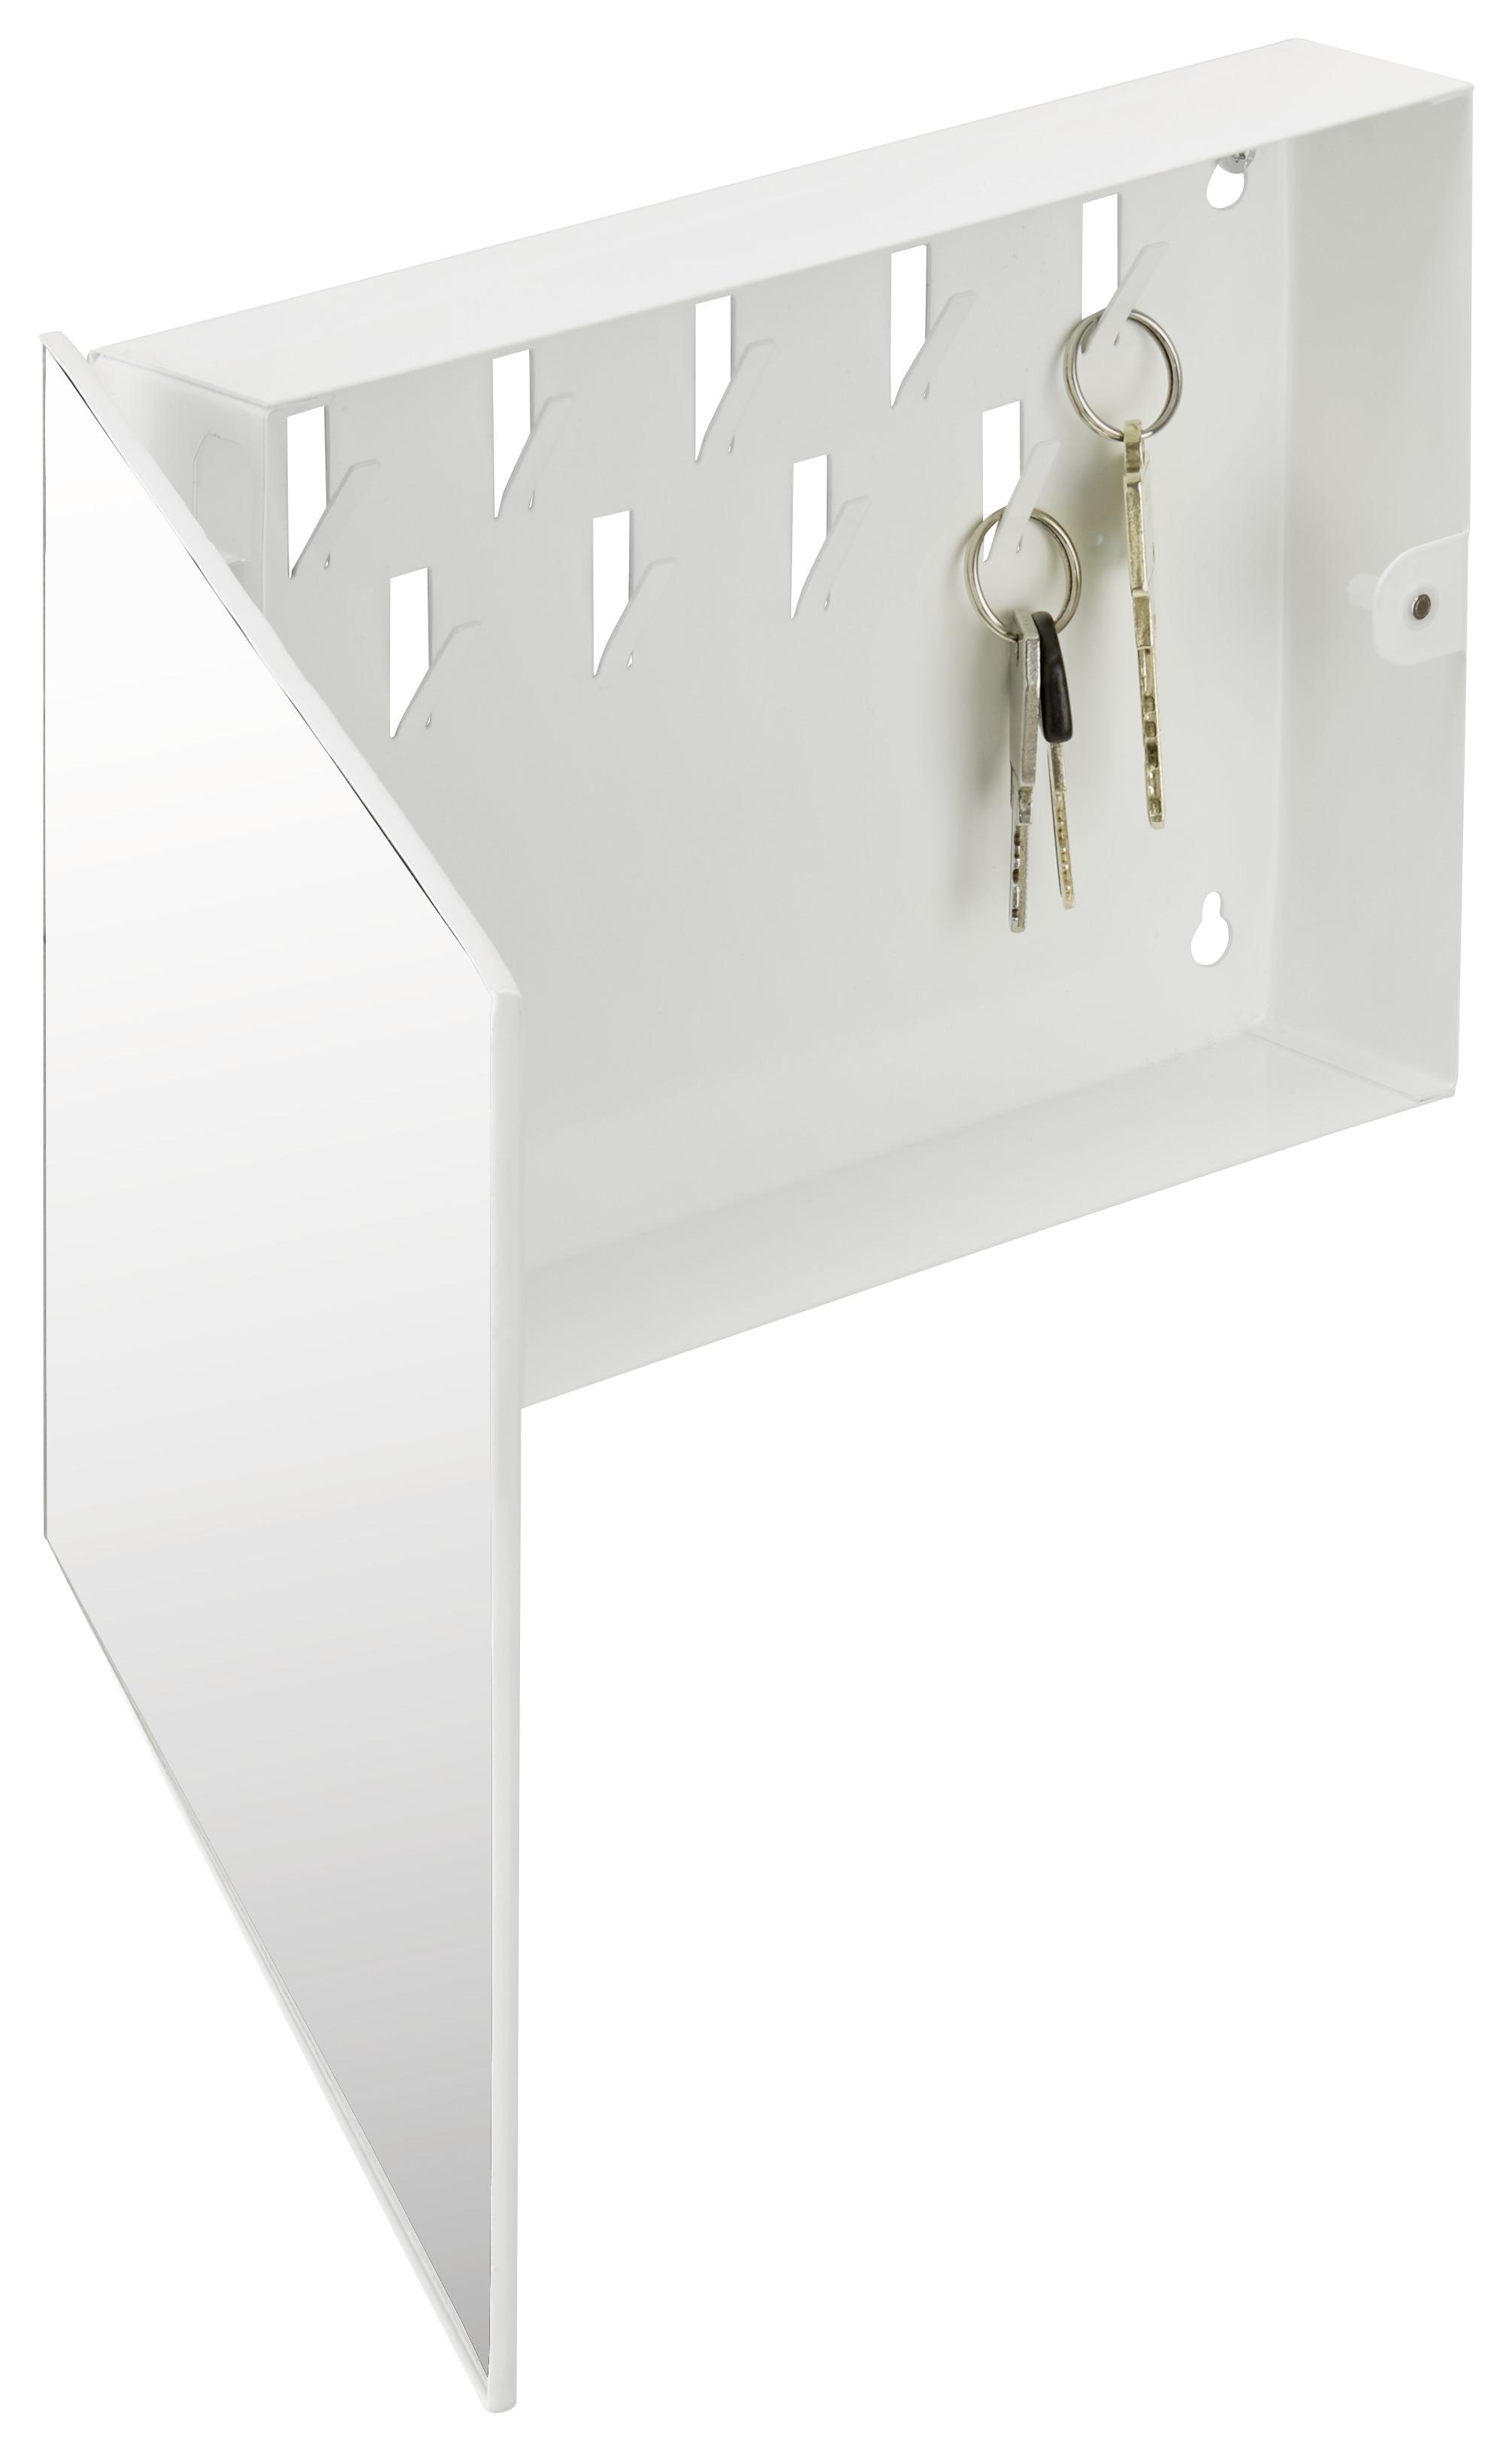 Schlüsselkasten Key 9 Haken Weiß BxH: 28x19 cm Mit Spiegel - Weiß, MODERN, Glas/Metall (28/19/4cm)